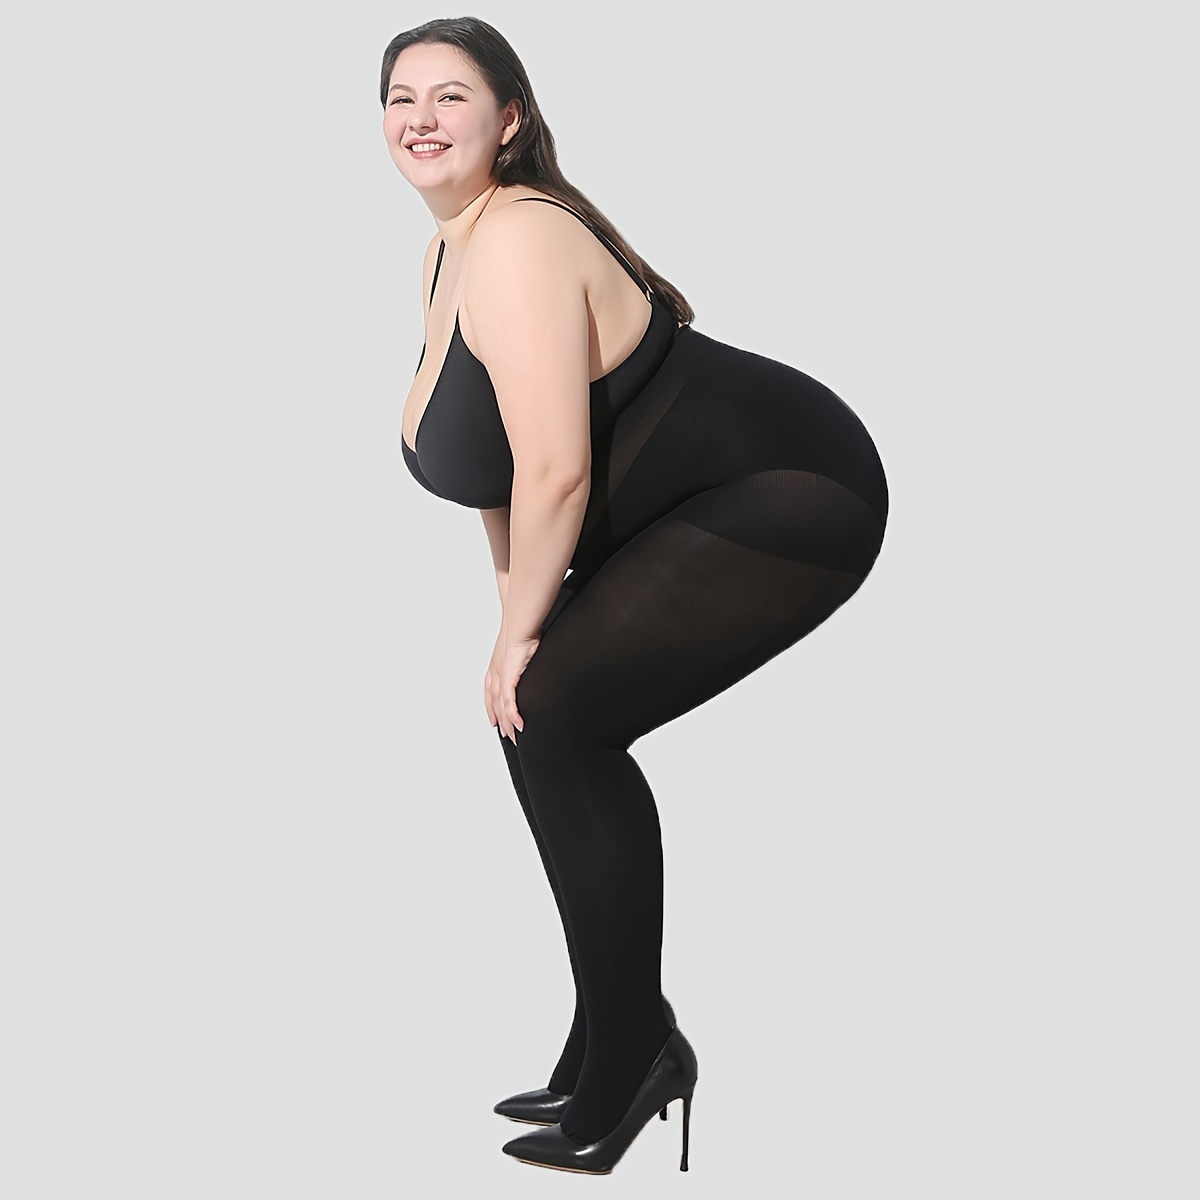 Pantyhose Stockings Women Large Sizes